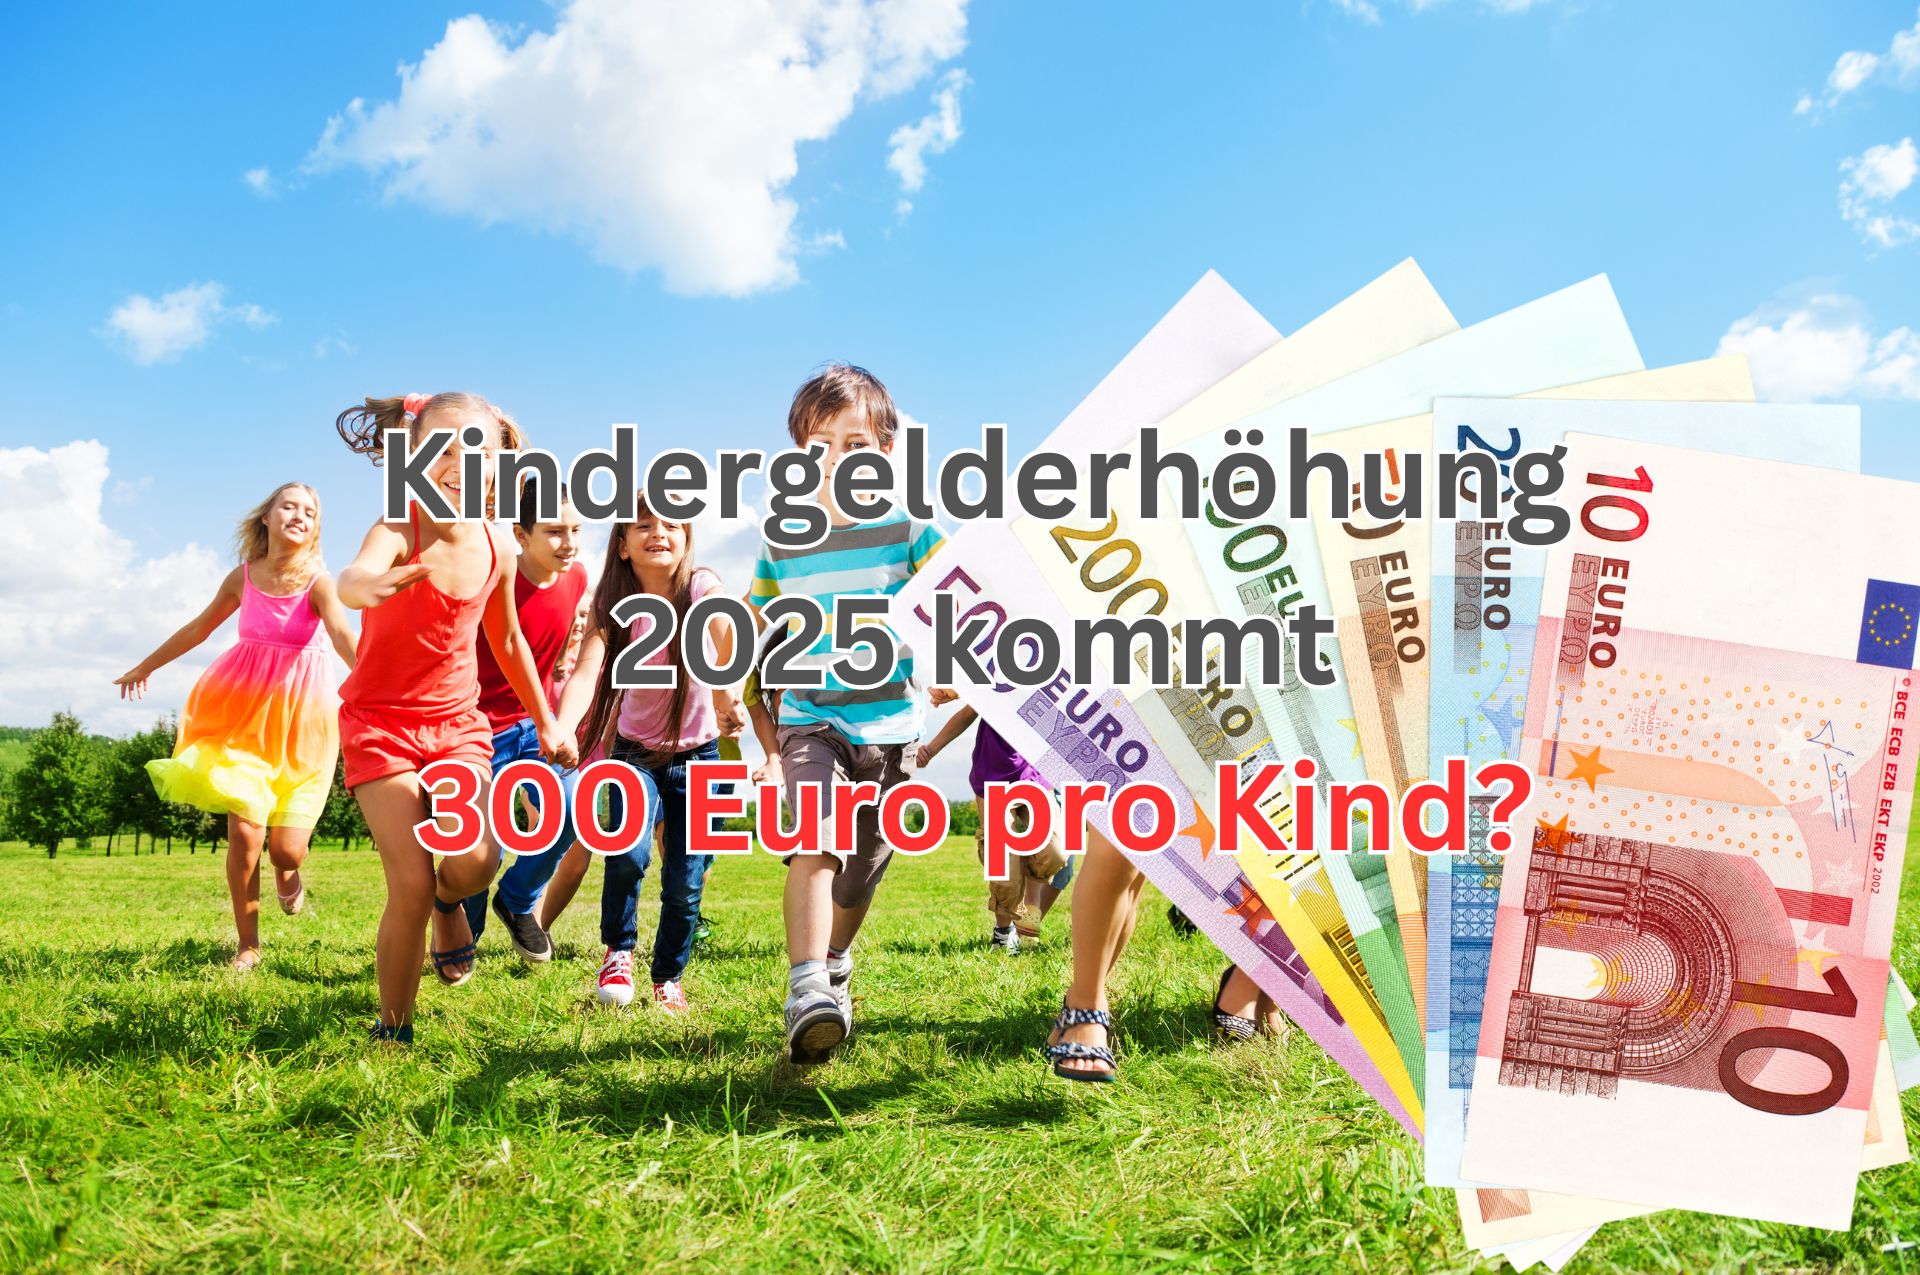 300 Euro Kindergeld pro Kind ab 2025?